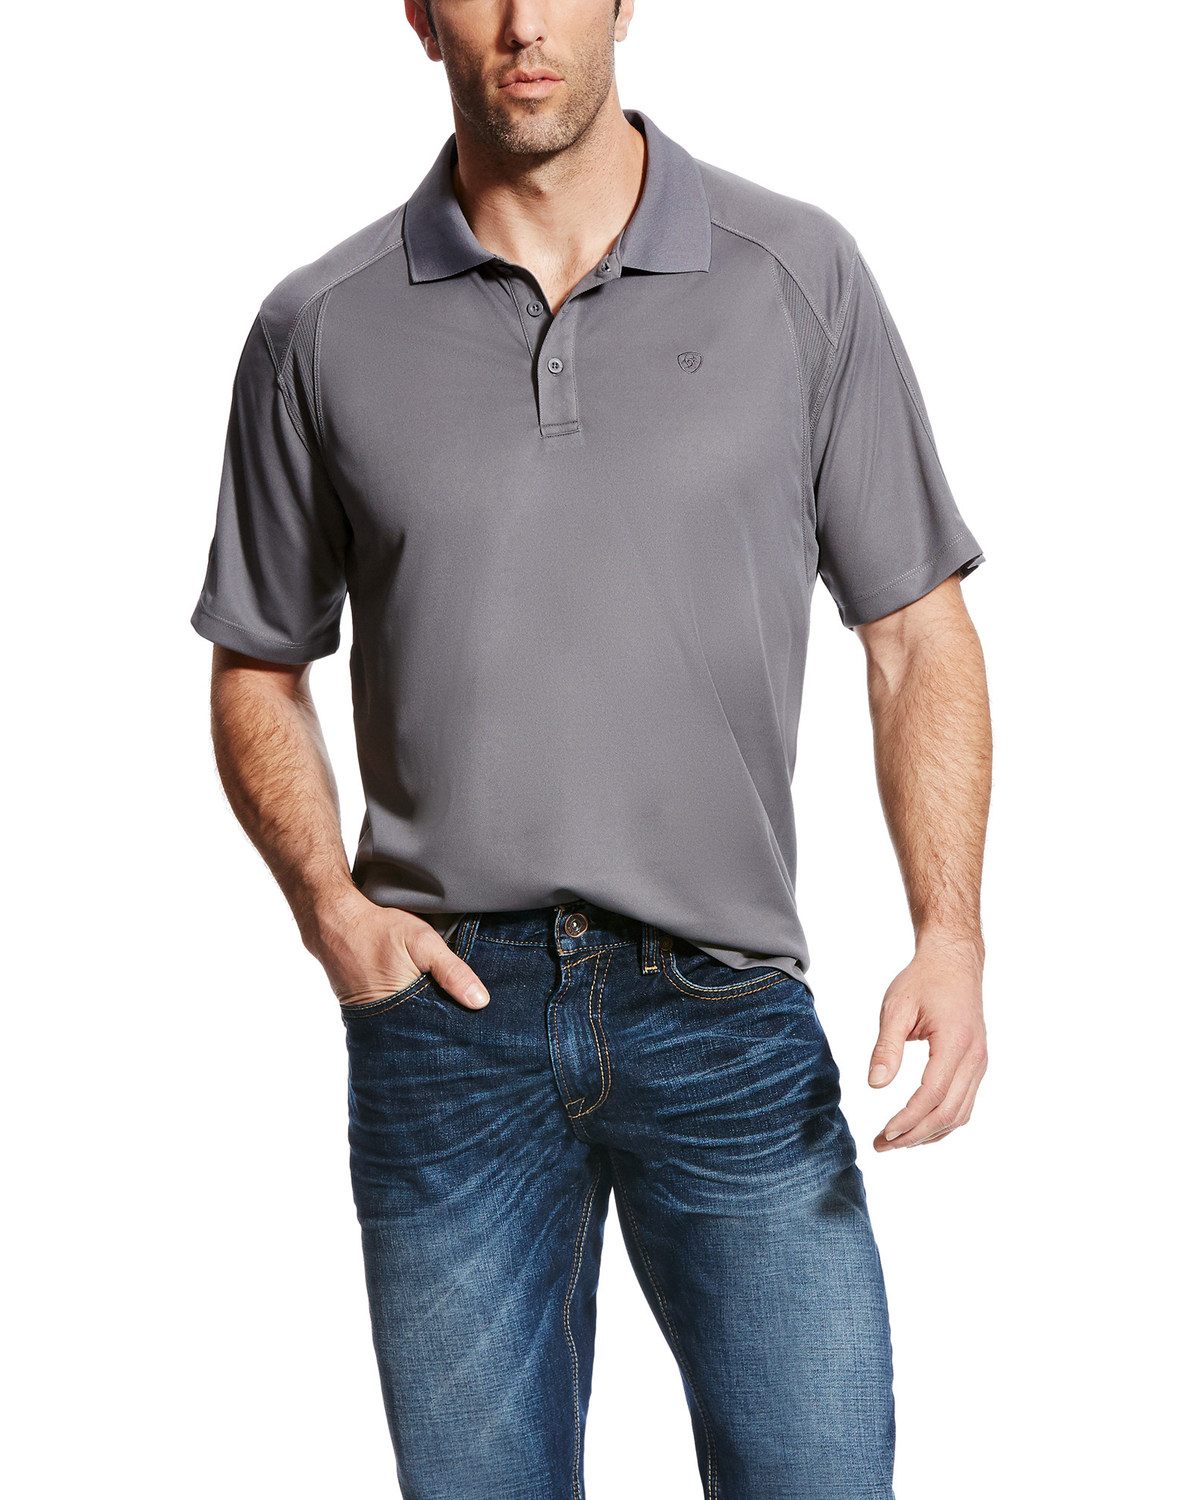 Ariat Men's Grey AC Pique Short Sleeve Polo Shirt